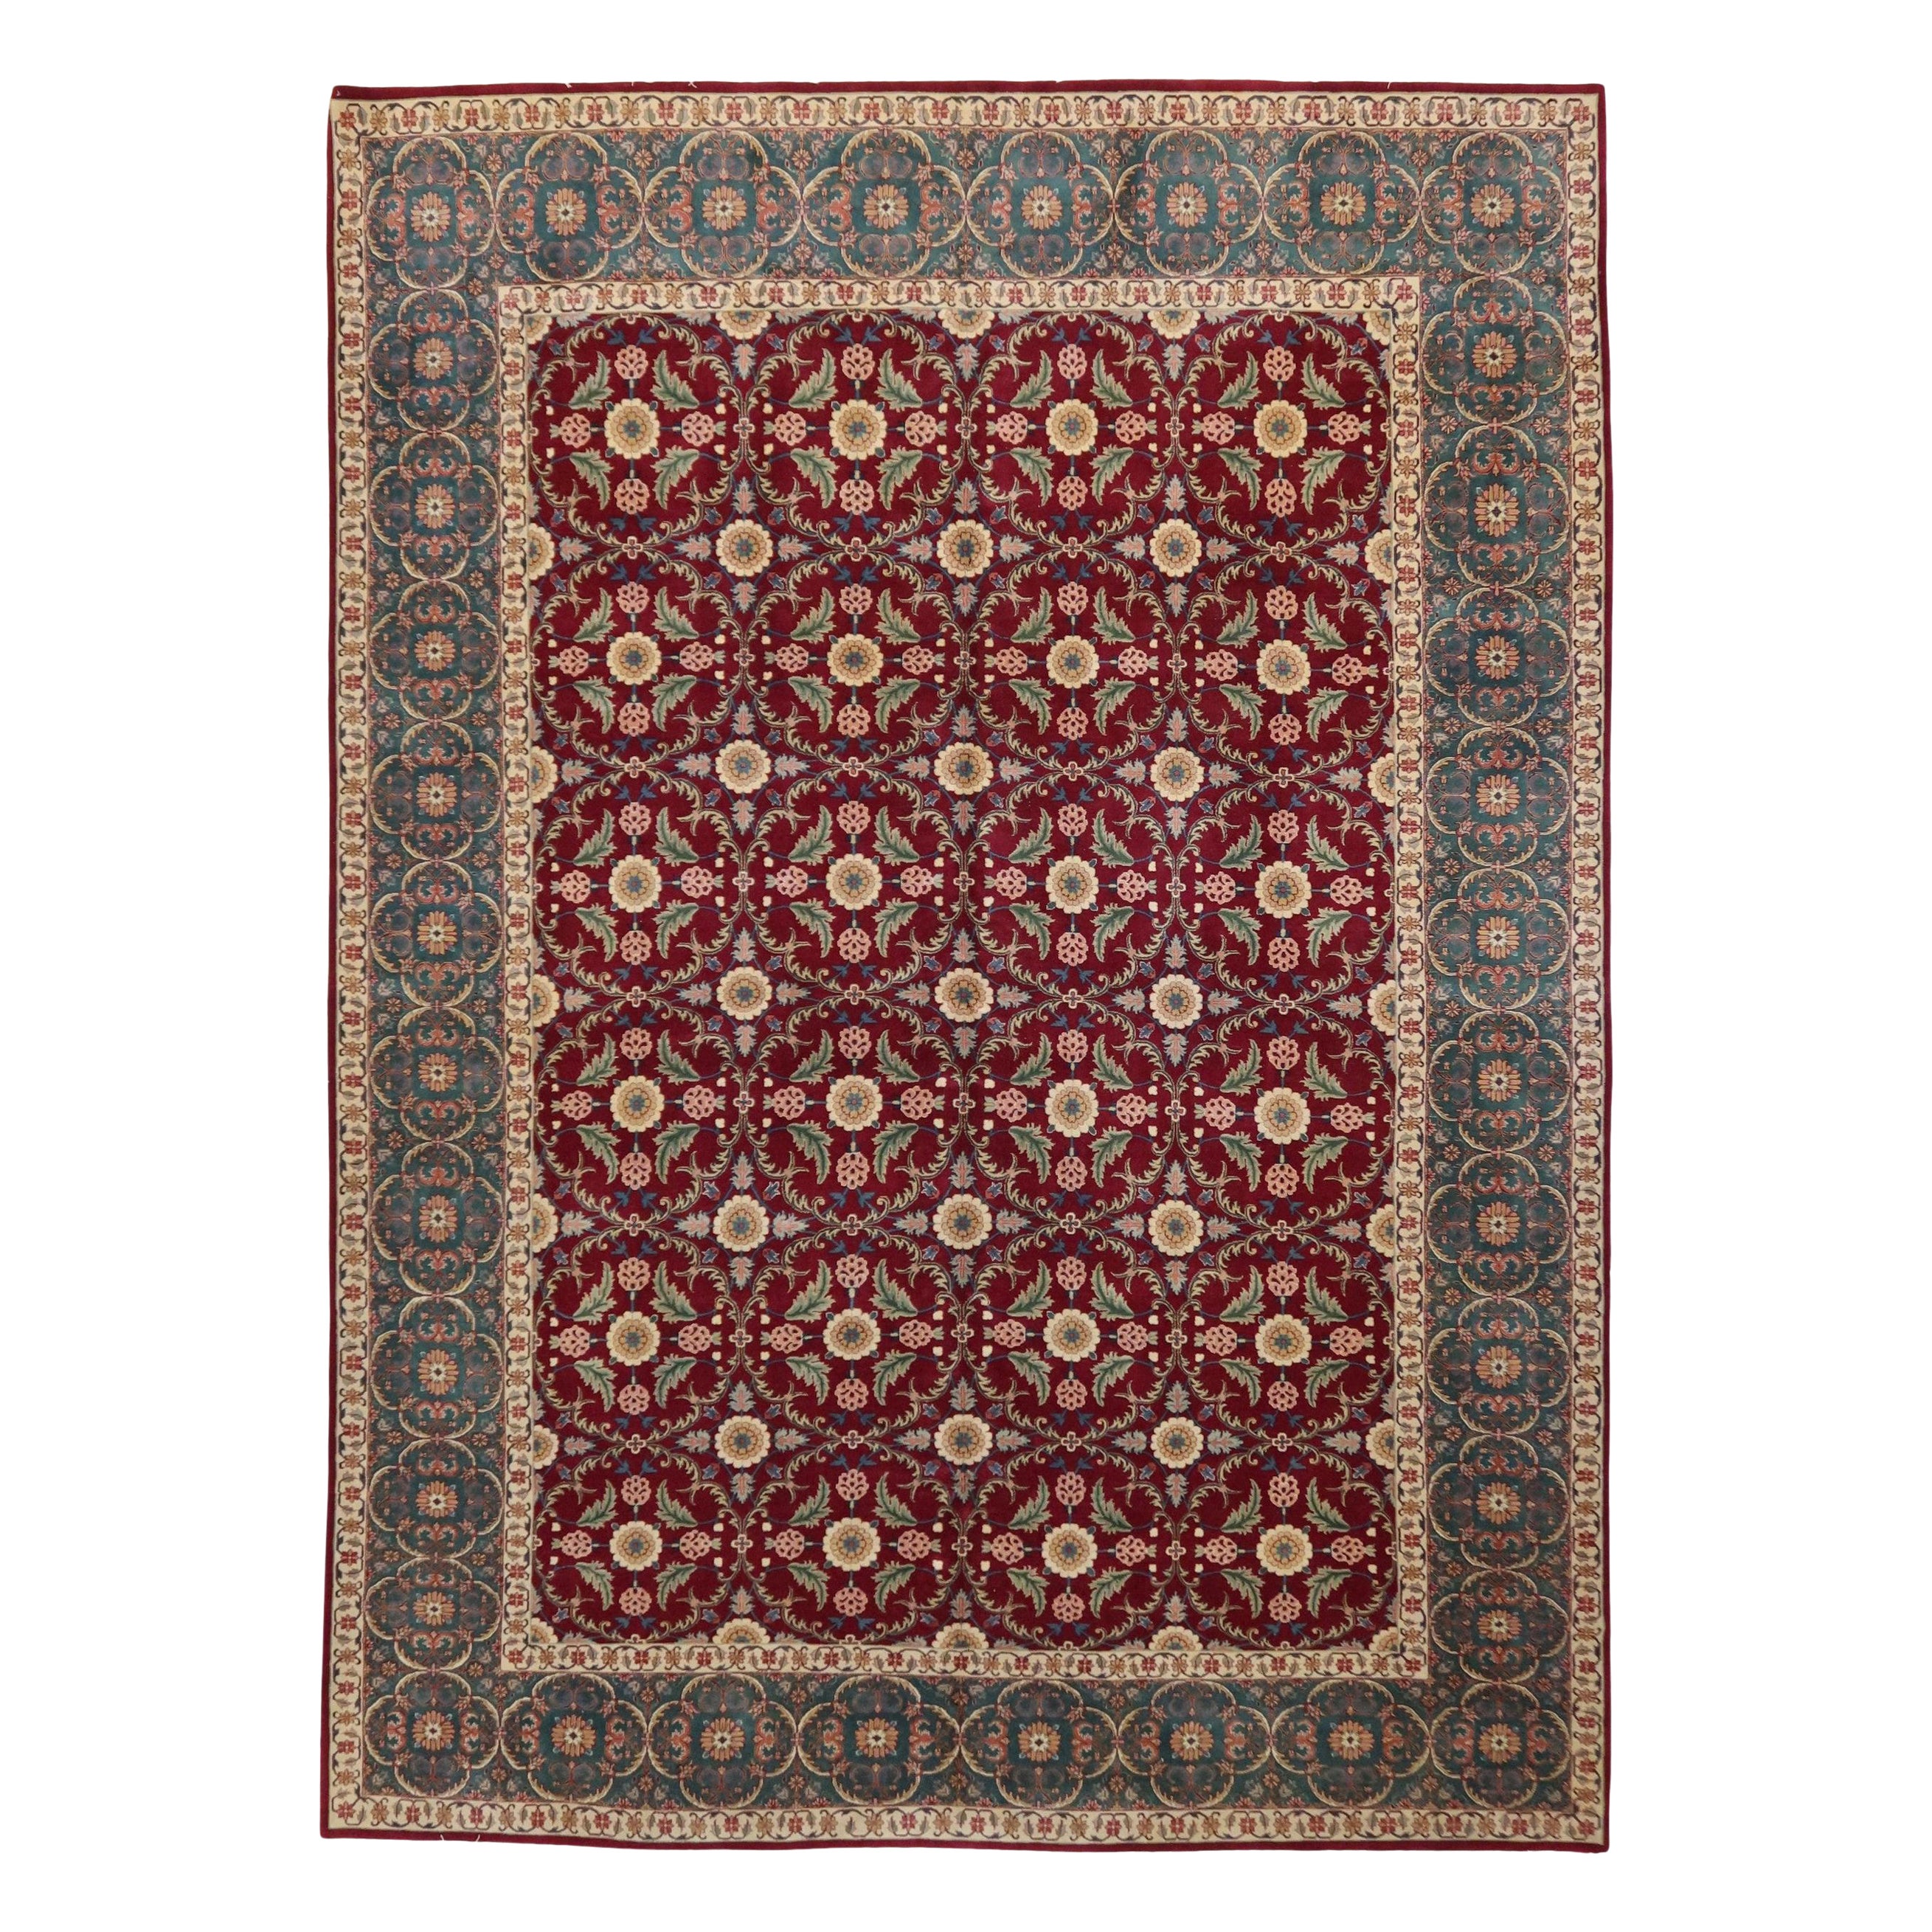 Agra Handgeknüpfter Teppich aus neuseeländischer Wolle in burgunderroter und grüner, feiner Qualität, auf Lager